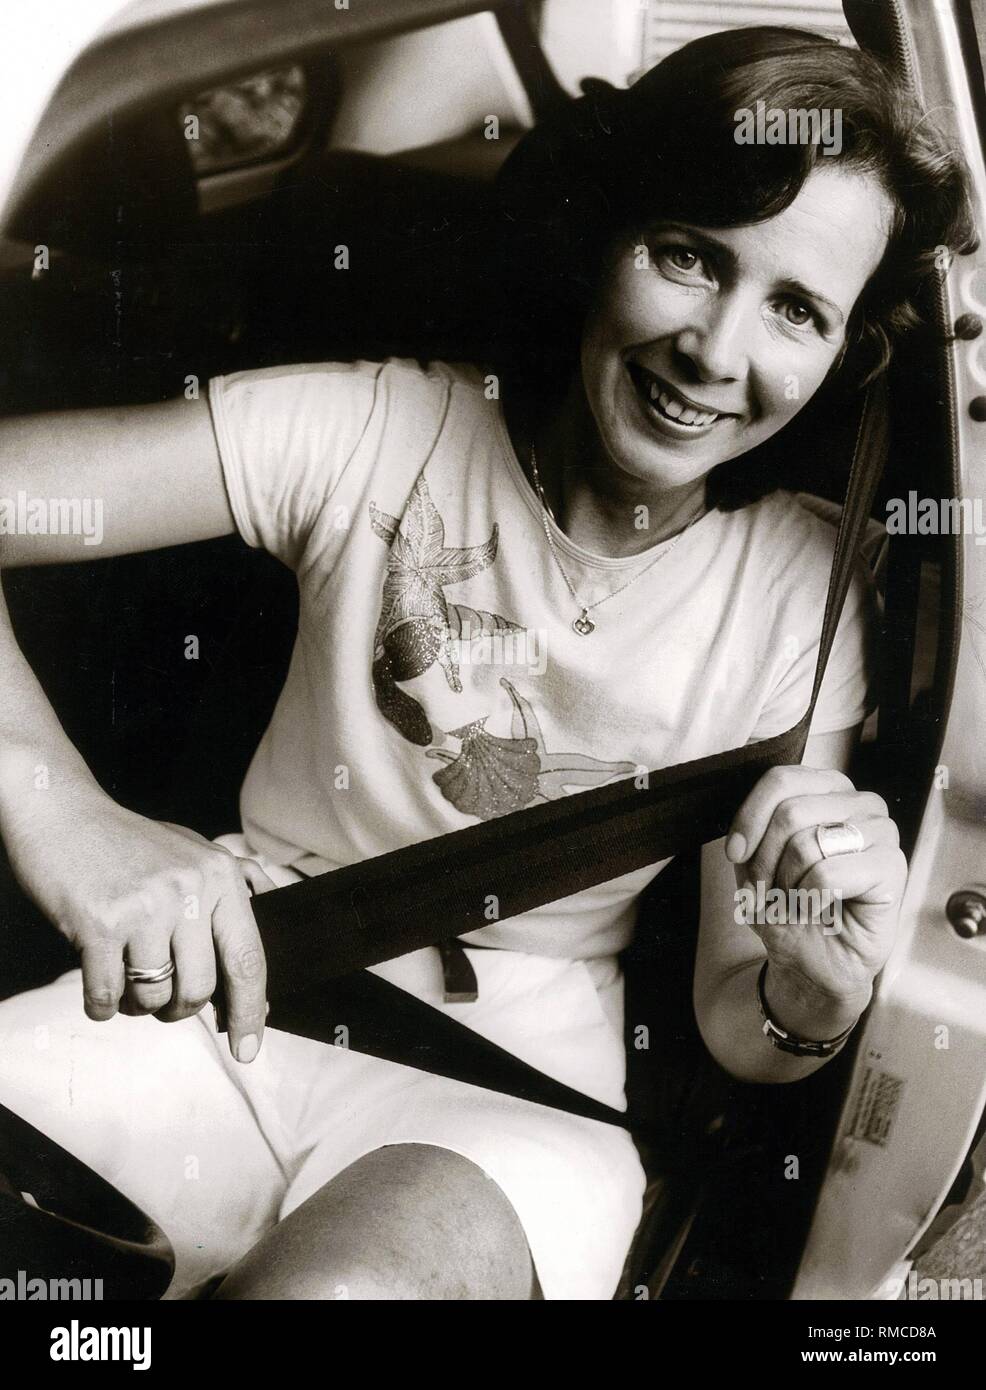 L'histoire : la ceinture de sécurité dans une voiture, démontré par Karin  dans une VW Golf, 1982. Cliquez sur '- première boucle, puis rendez-vous !'  Photo Stock - Alamy